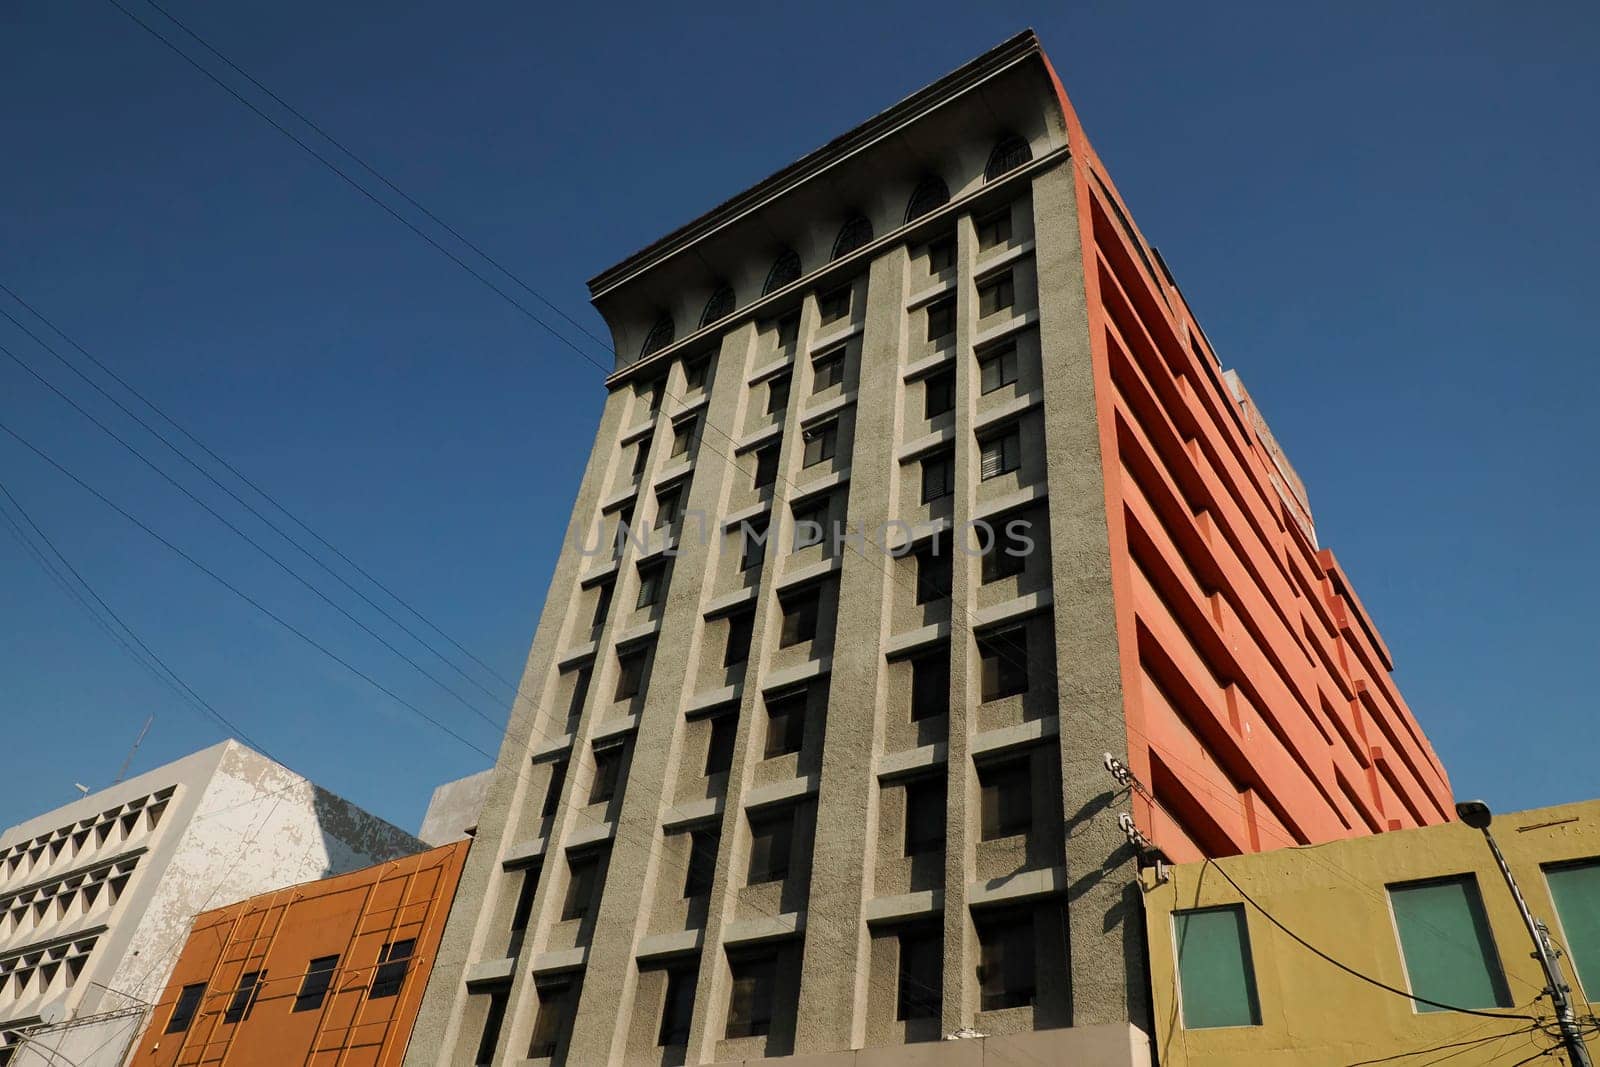 Abandoned modern building in ciudad de mexico, mexico city by AndreaIzzotti